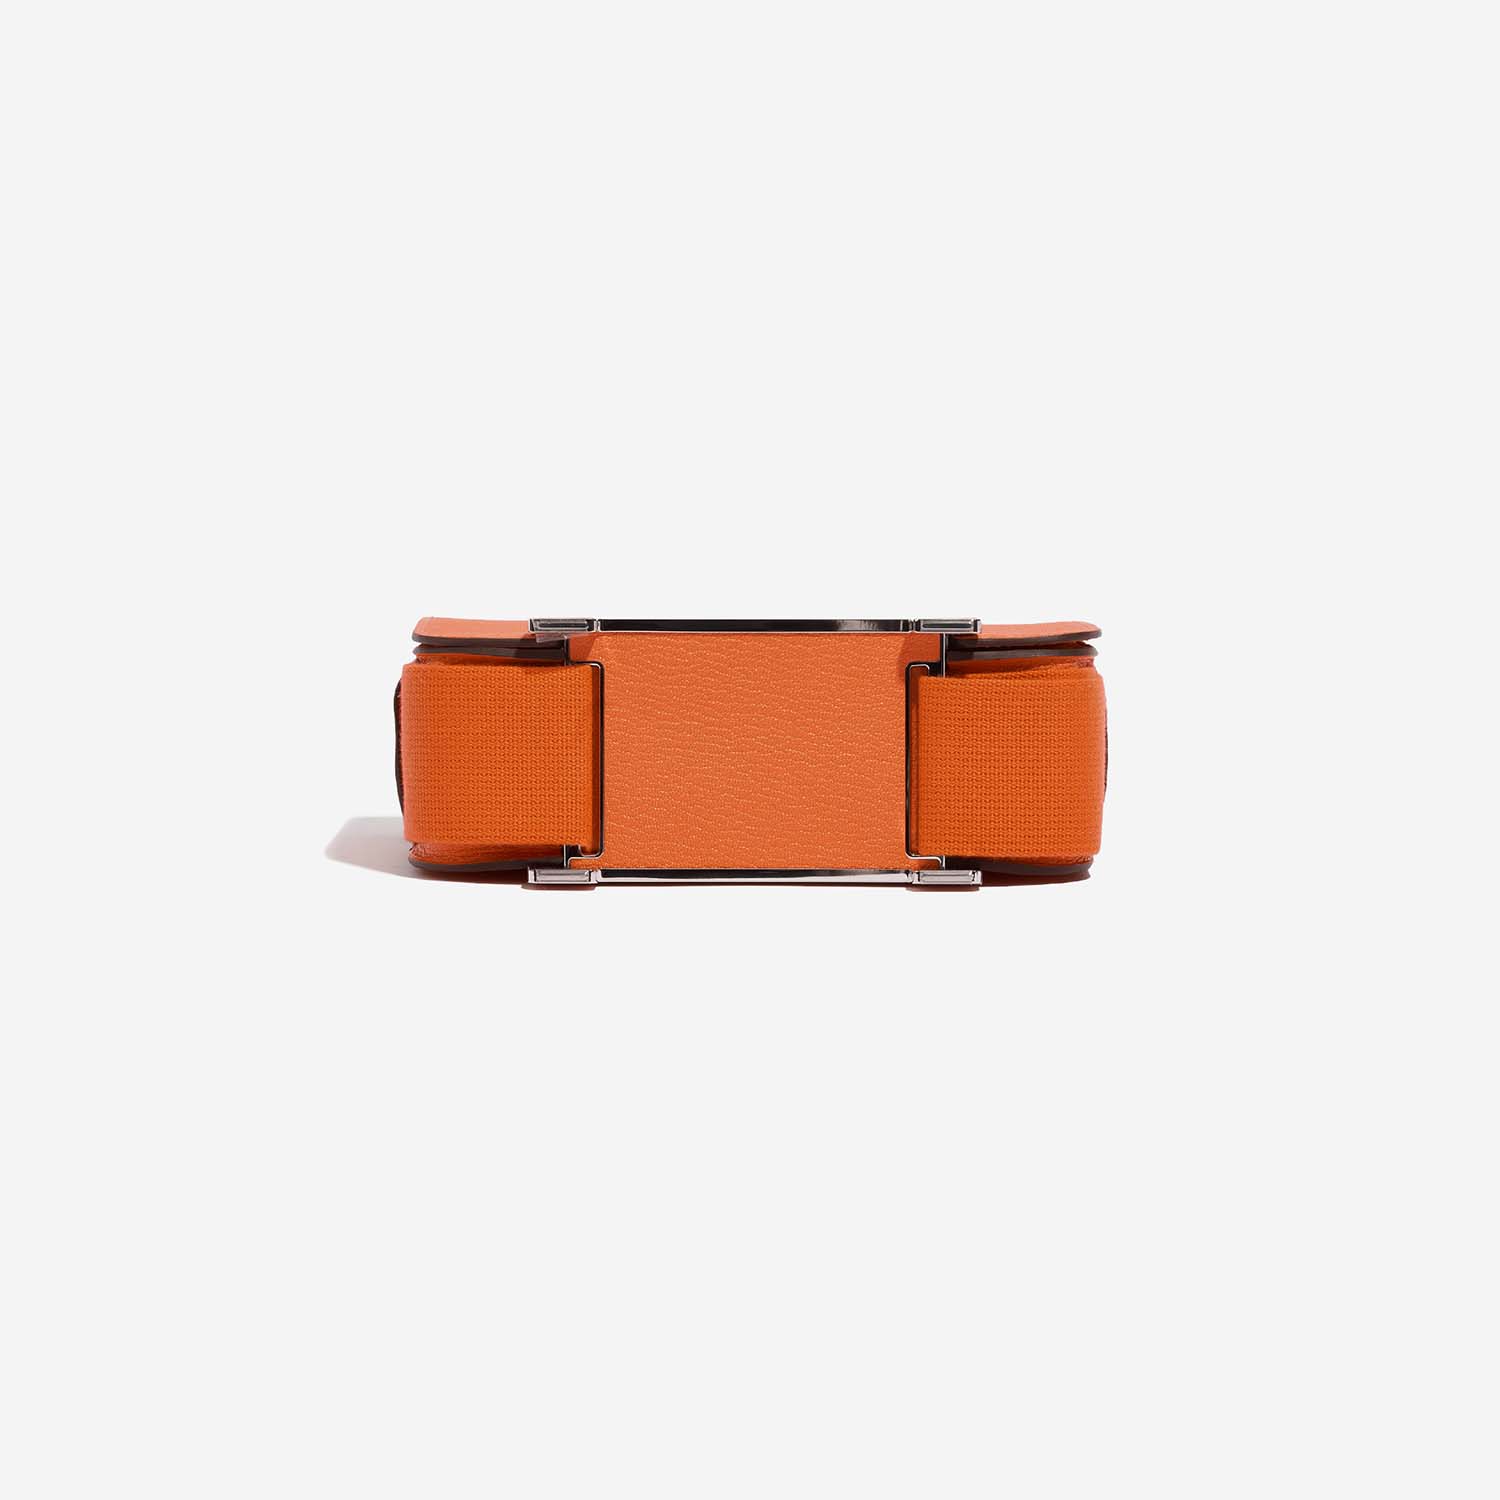 Hermès Geta Orange Bottom | Verkaufen Sie Ihre Designer-Tasche auf Saclab.com